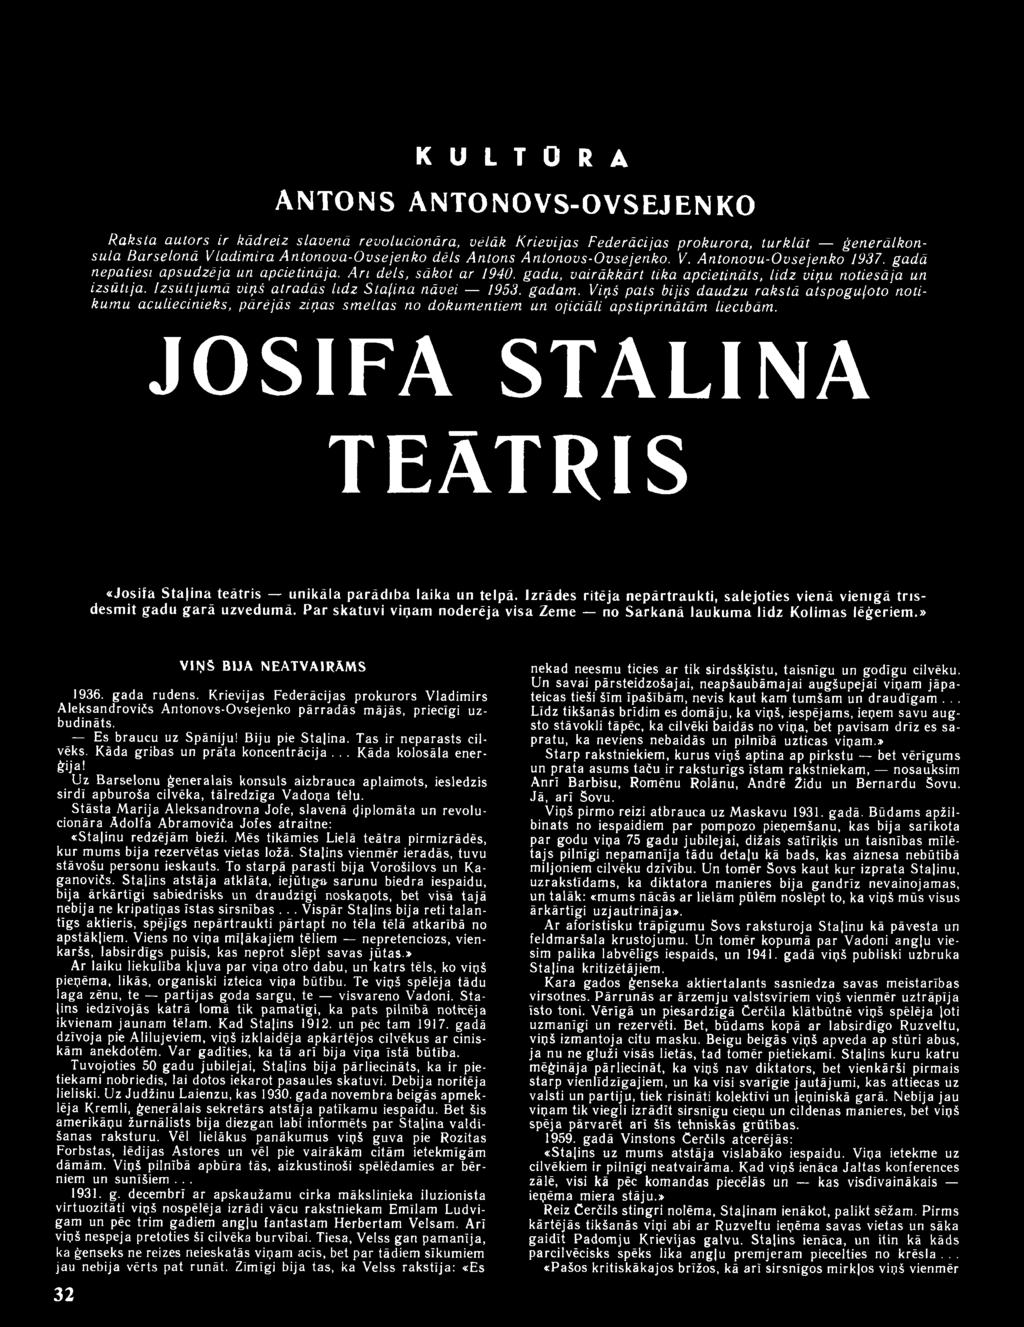 JOSIFA STAĻINA TEĀTRIS «Josifa Staļina teātris unikāla parādība laika un telpā. Izrādes ritēja nepārtraukti, salejoties vienā vienīgā trīsdesmit gadu garā uzvedumā.